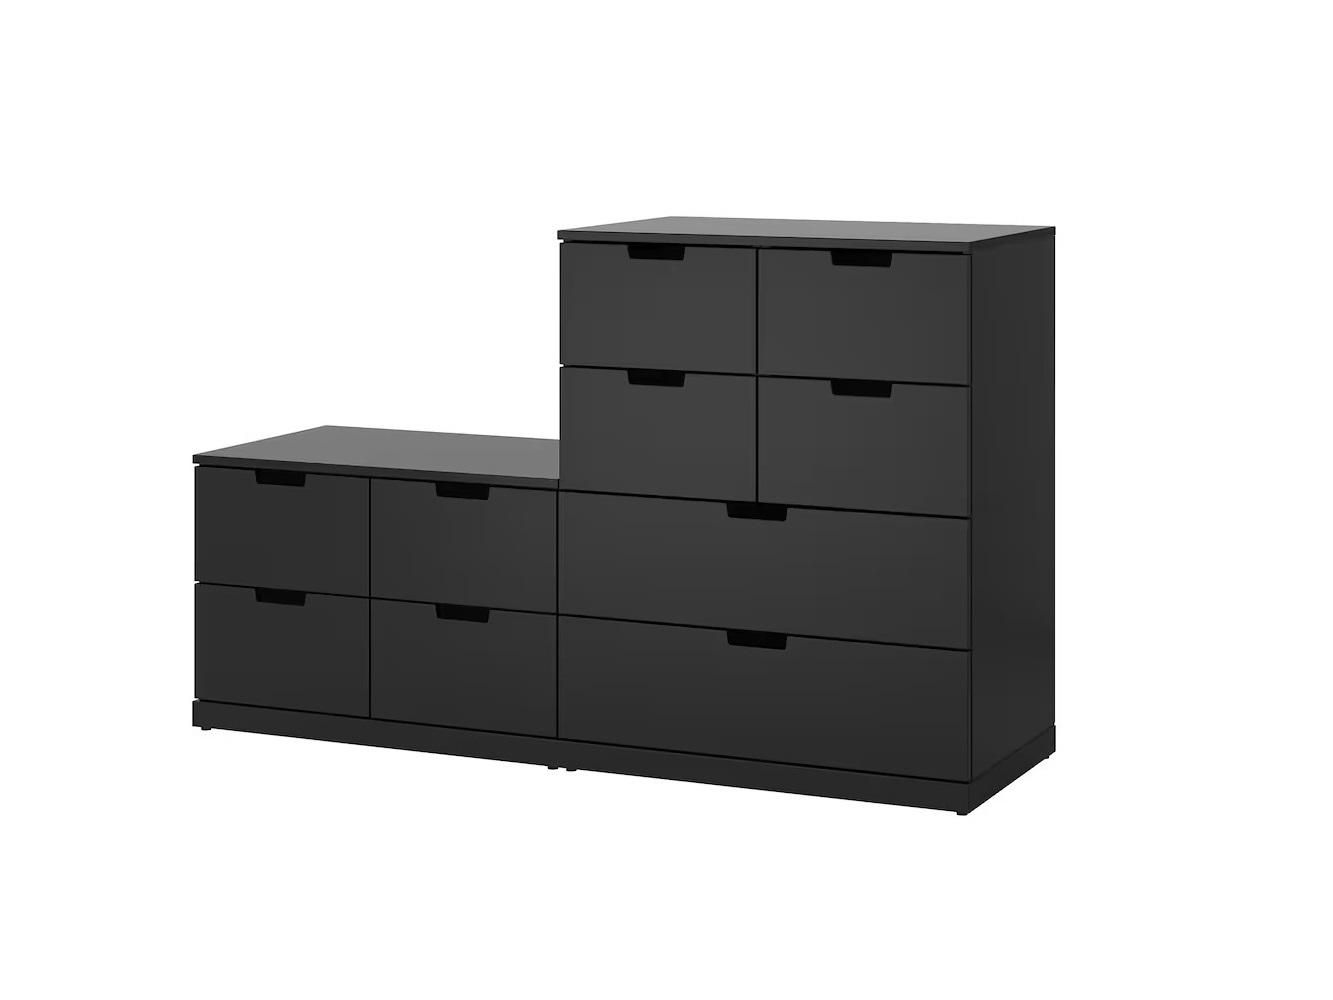 Комод Нордли 37 black ИКЕА (IKEA) изображение товара